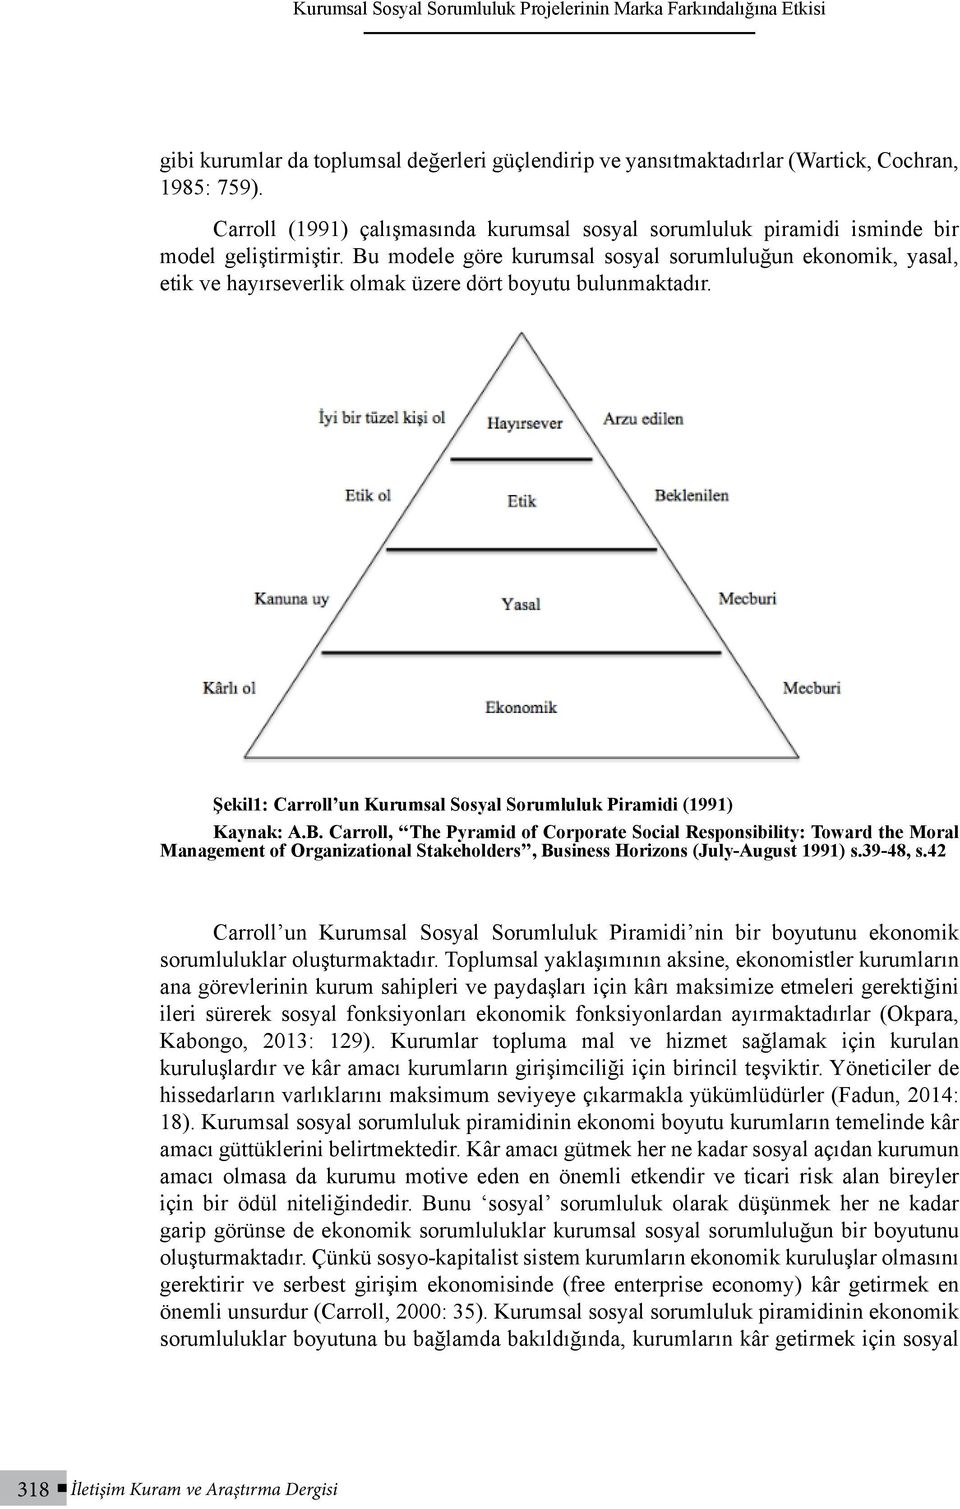 Bu modele göre kurumsal sosyal sorumluluğun ekonomik, yasal, etik ve hayırseverlik olmak üzere dört boyutu bulunmaktadır. Şekil1: Carroll un Kurumsal Sosyal Sorumluluk Piramidi (1991) Kaynak: A.B. Carroll, The Pyramid of Corporate Social Responsibility: Toward the Moral Management of Organizational Stakeholders, Business Horizons (July-August 1991) s.